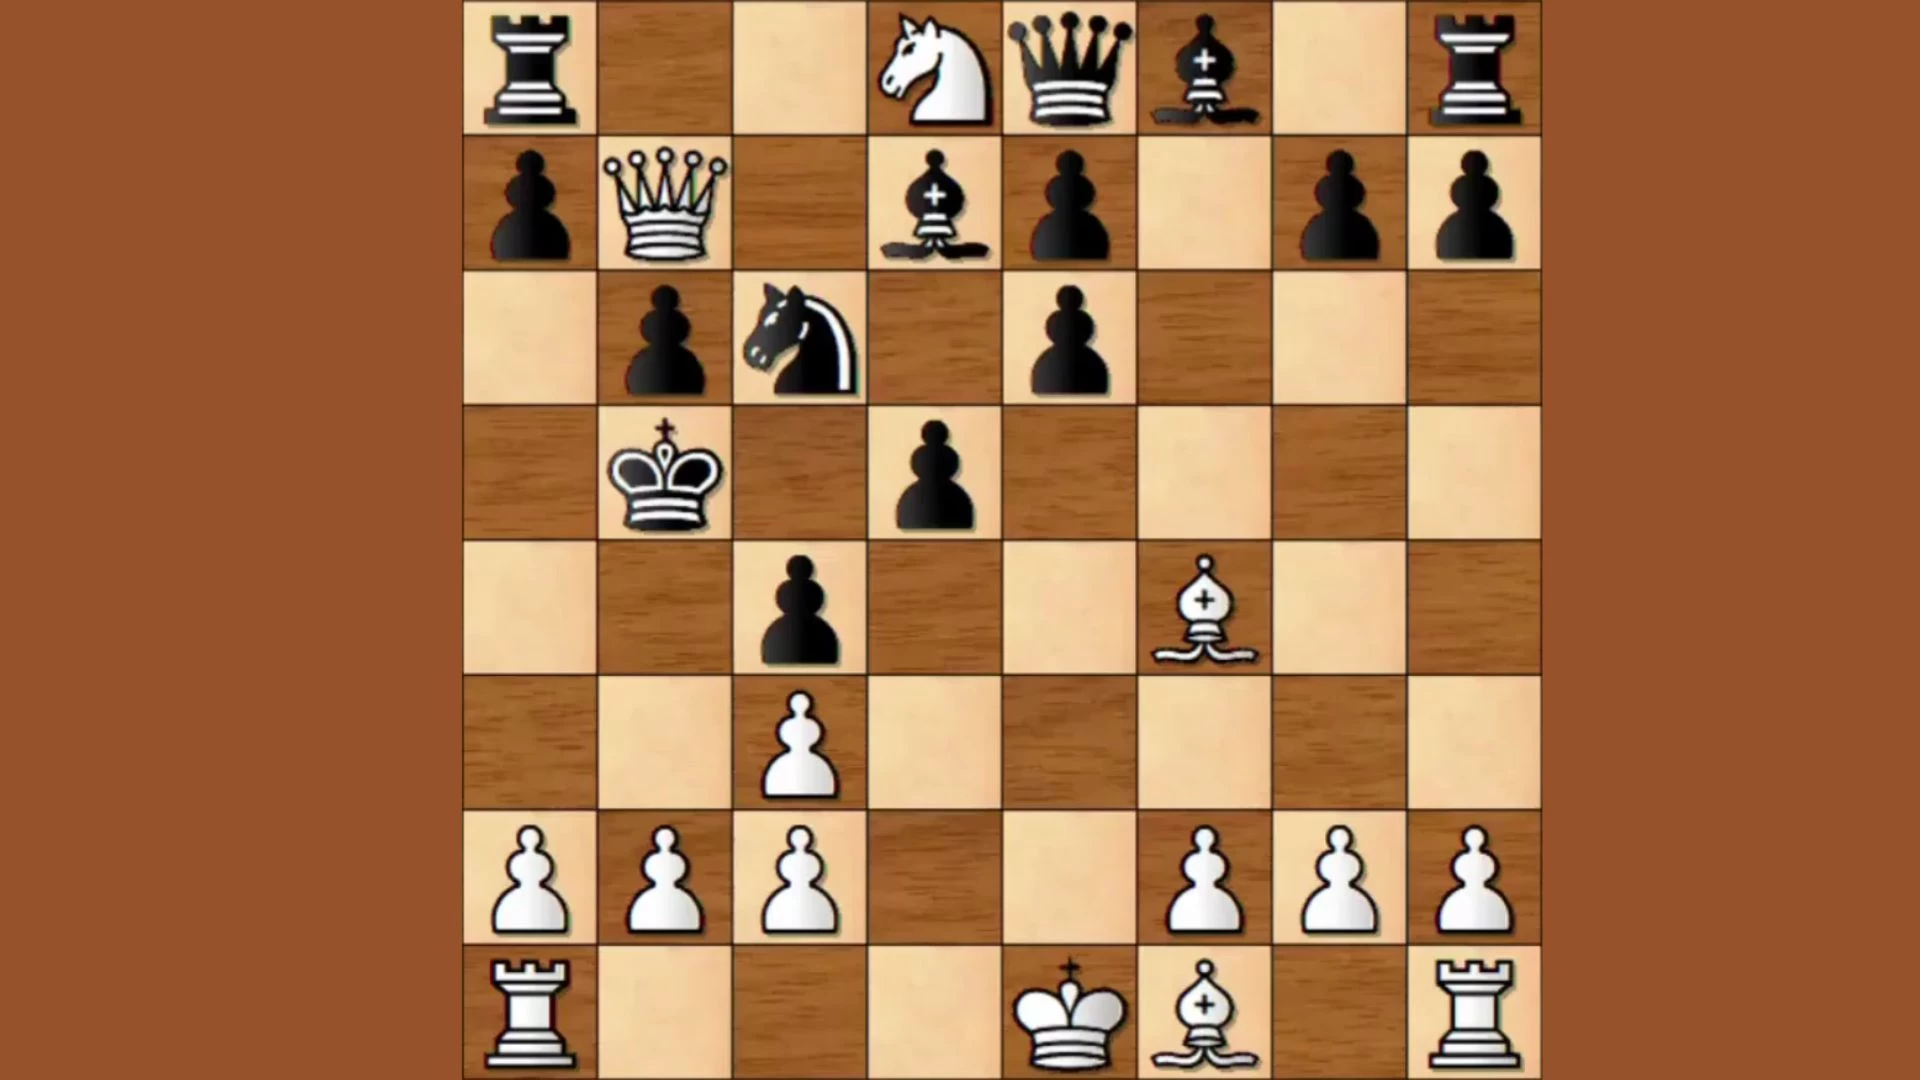 Können Sie vier Züge finden, um dieses Schachspiel zu gewinnen?